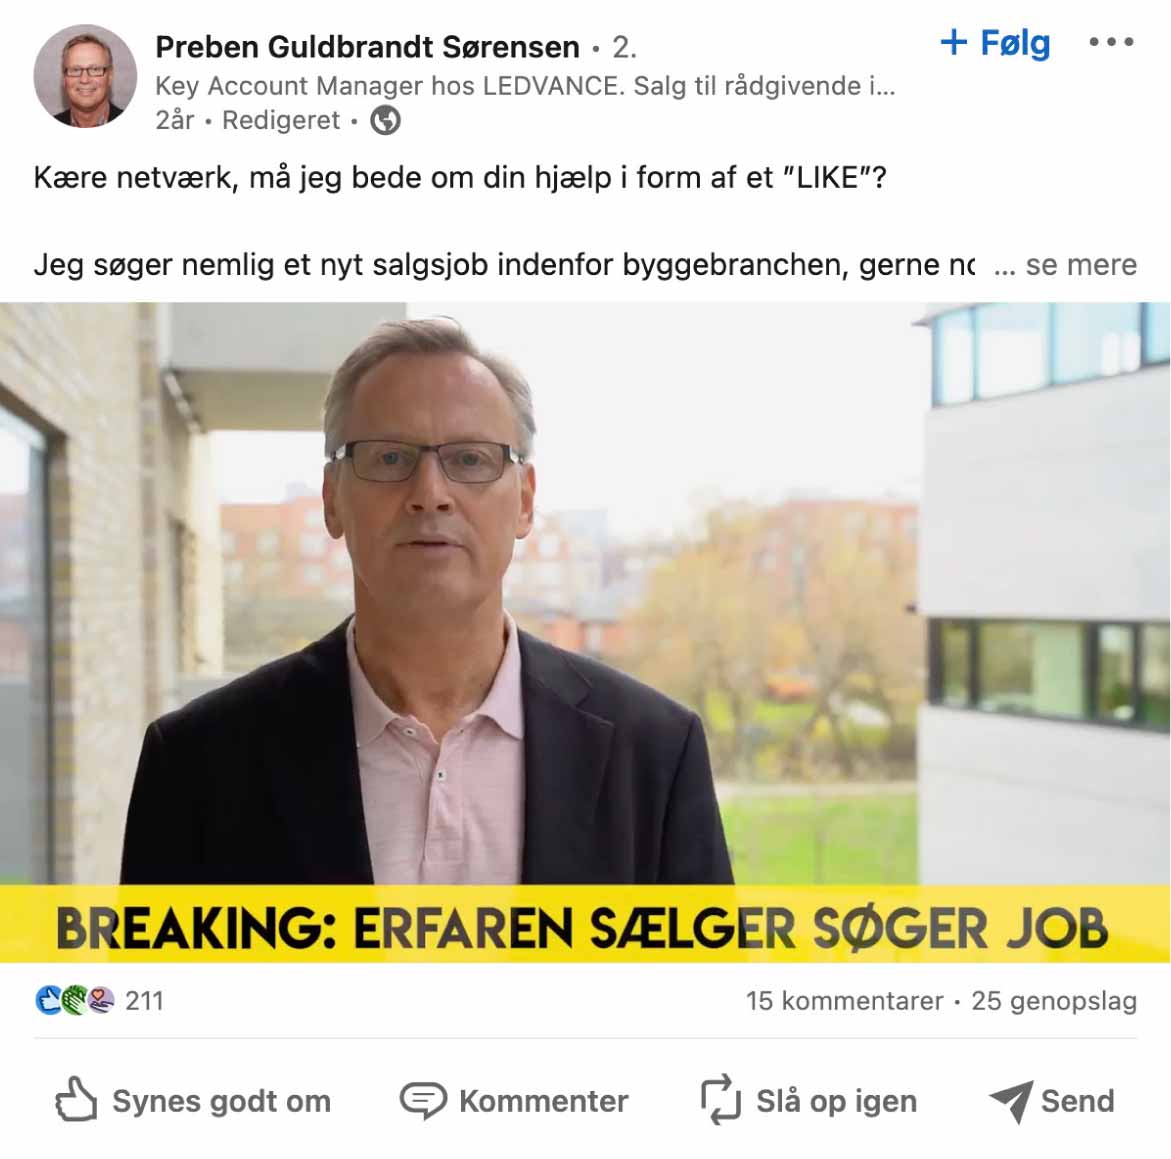 Eksempel på jobopslag fra Preben Guldbrandt Sørensen